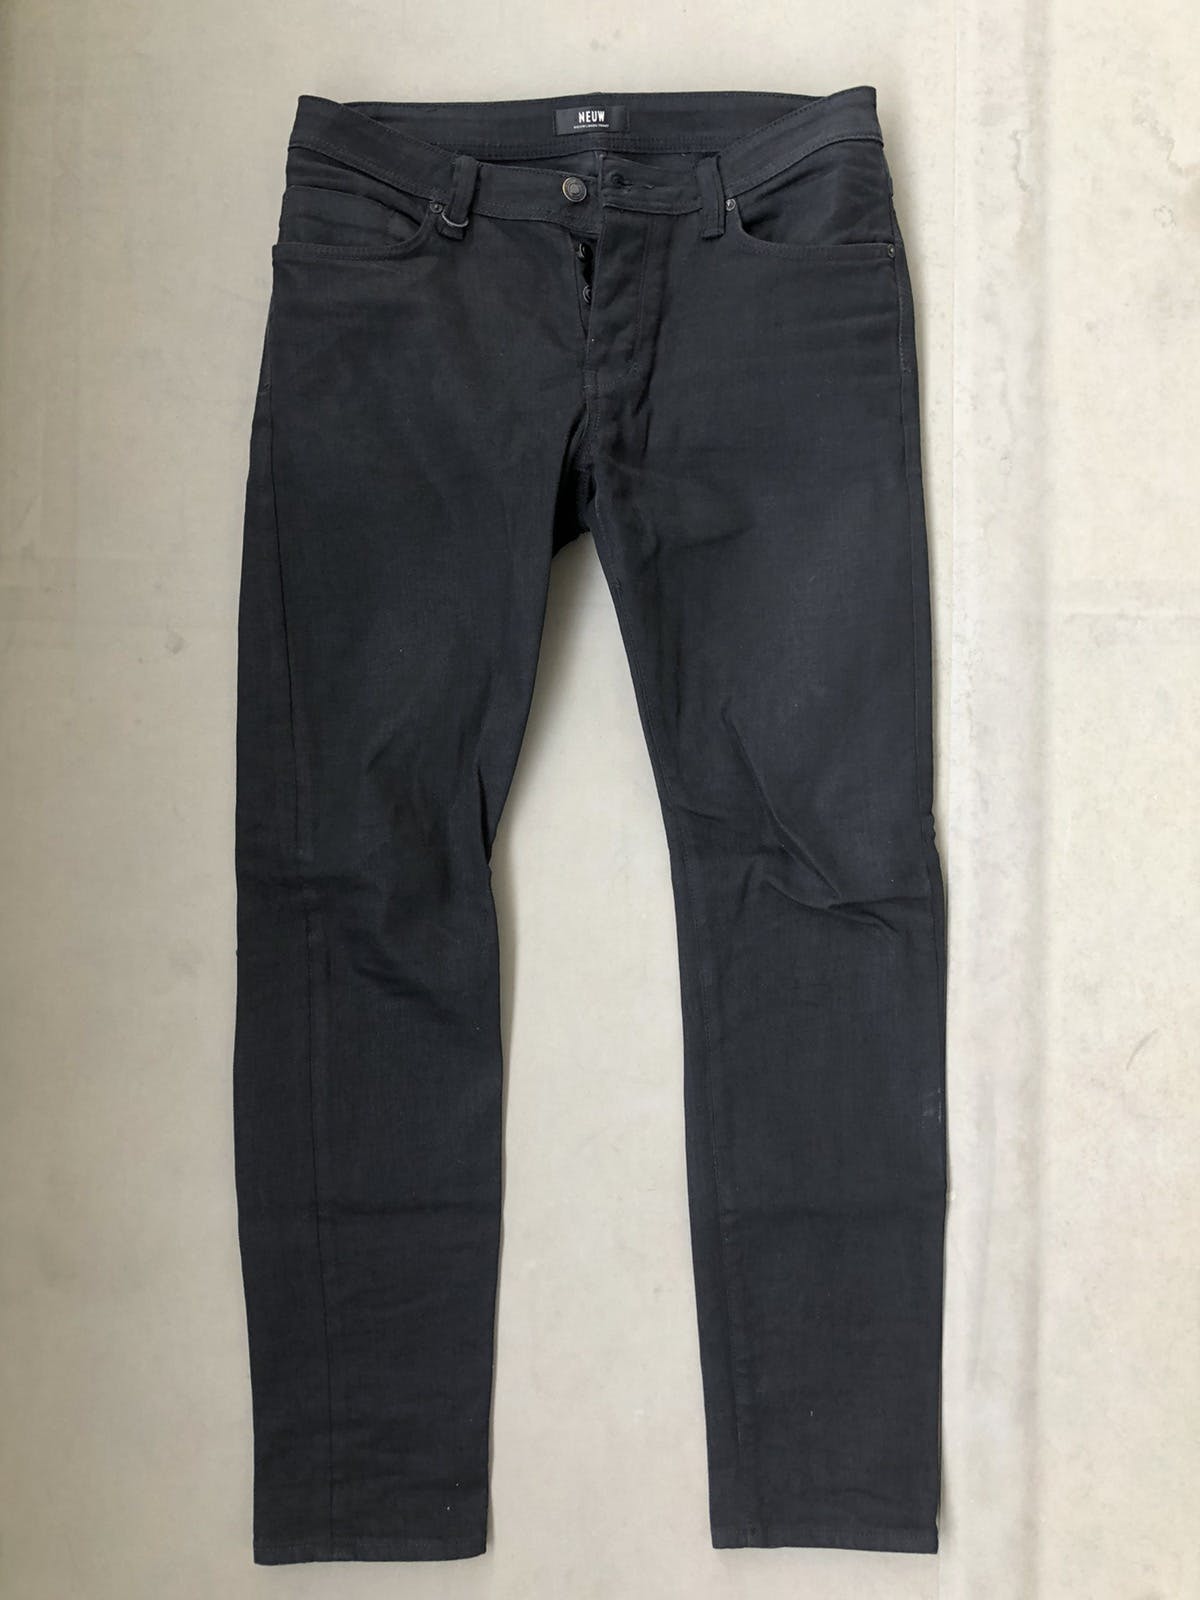 Neuw denim Iggy skinny black jeans - 1